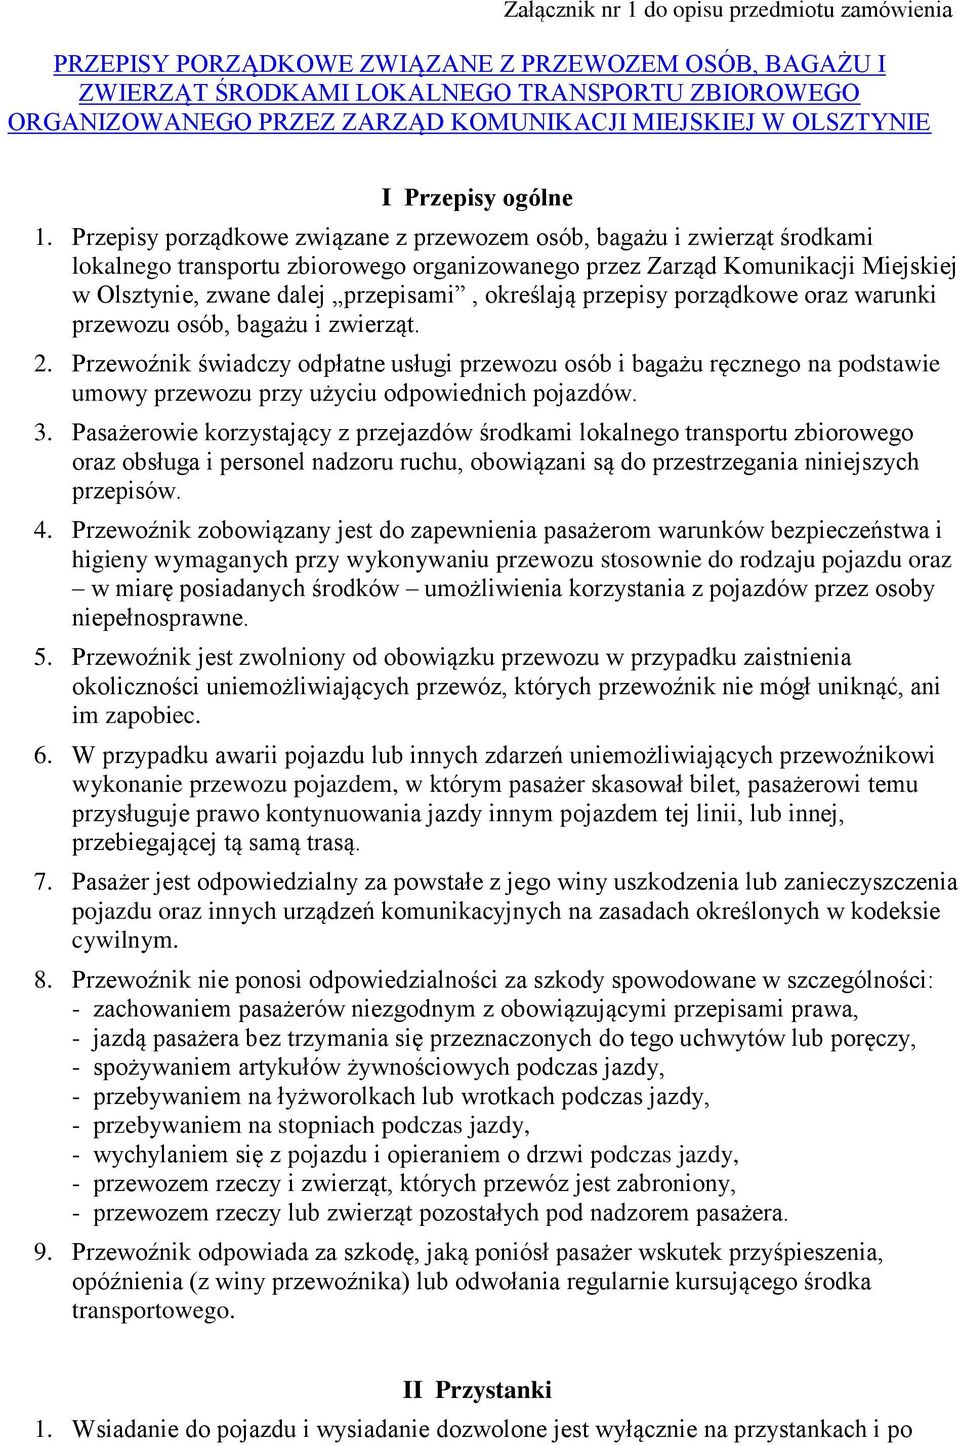 Przepisy porządkowe związane z przewozem osób, bagażu i zwierząt środkami lokalnego transportu zbiorowego organizowanego przez Zarząd Komunikacji Miejskiej w Olsztynie, zwane dalej przepisami,